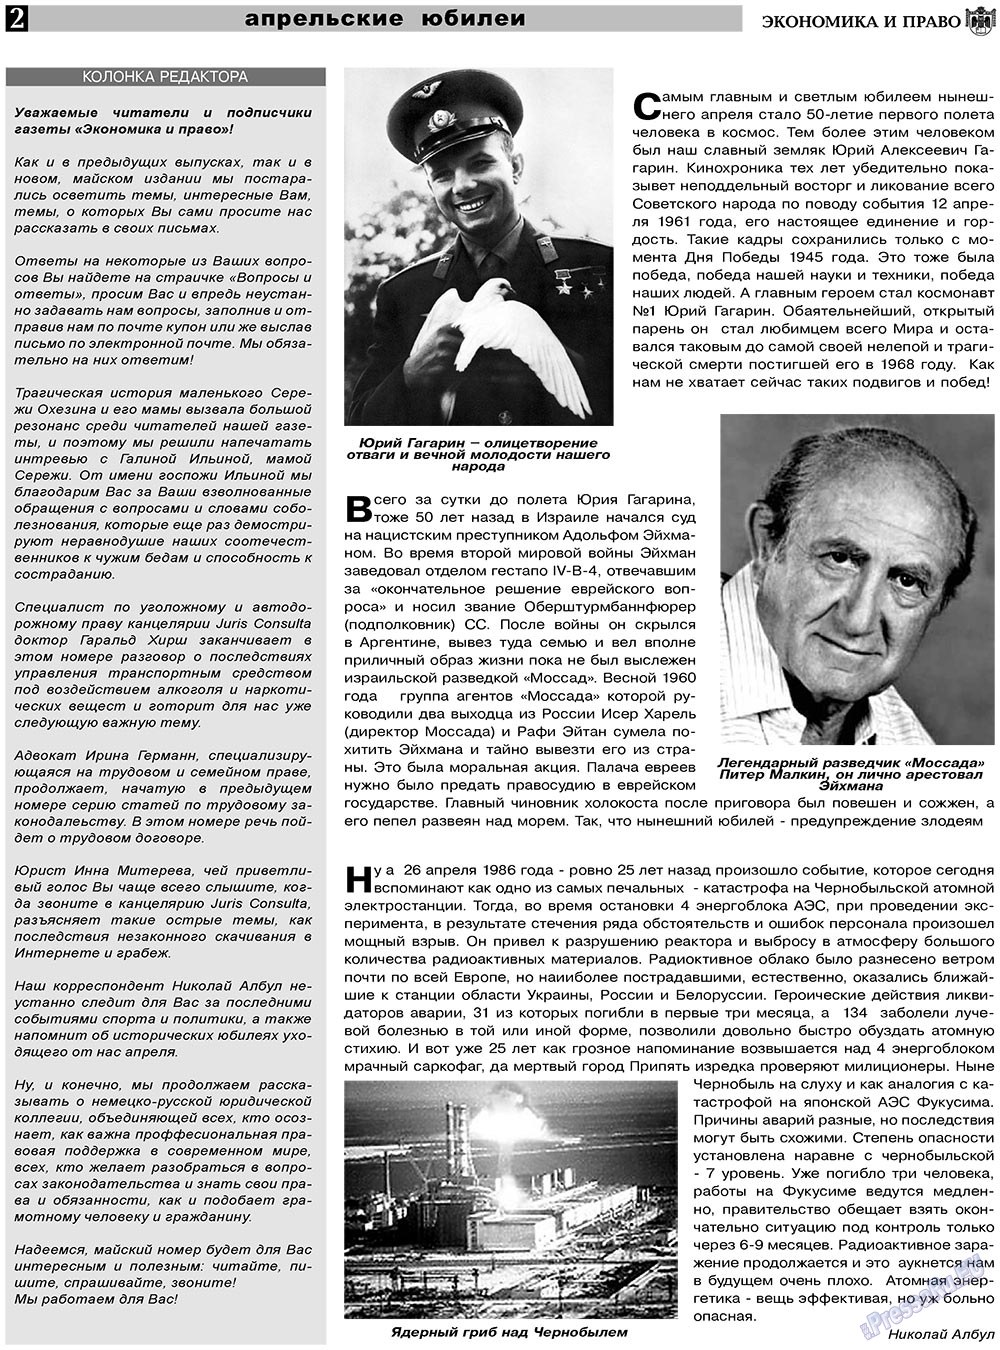 Экономика и право, газета. 2011 №5 стр.2